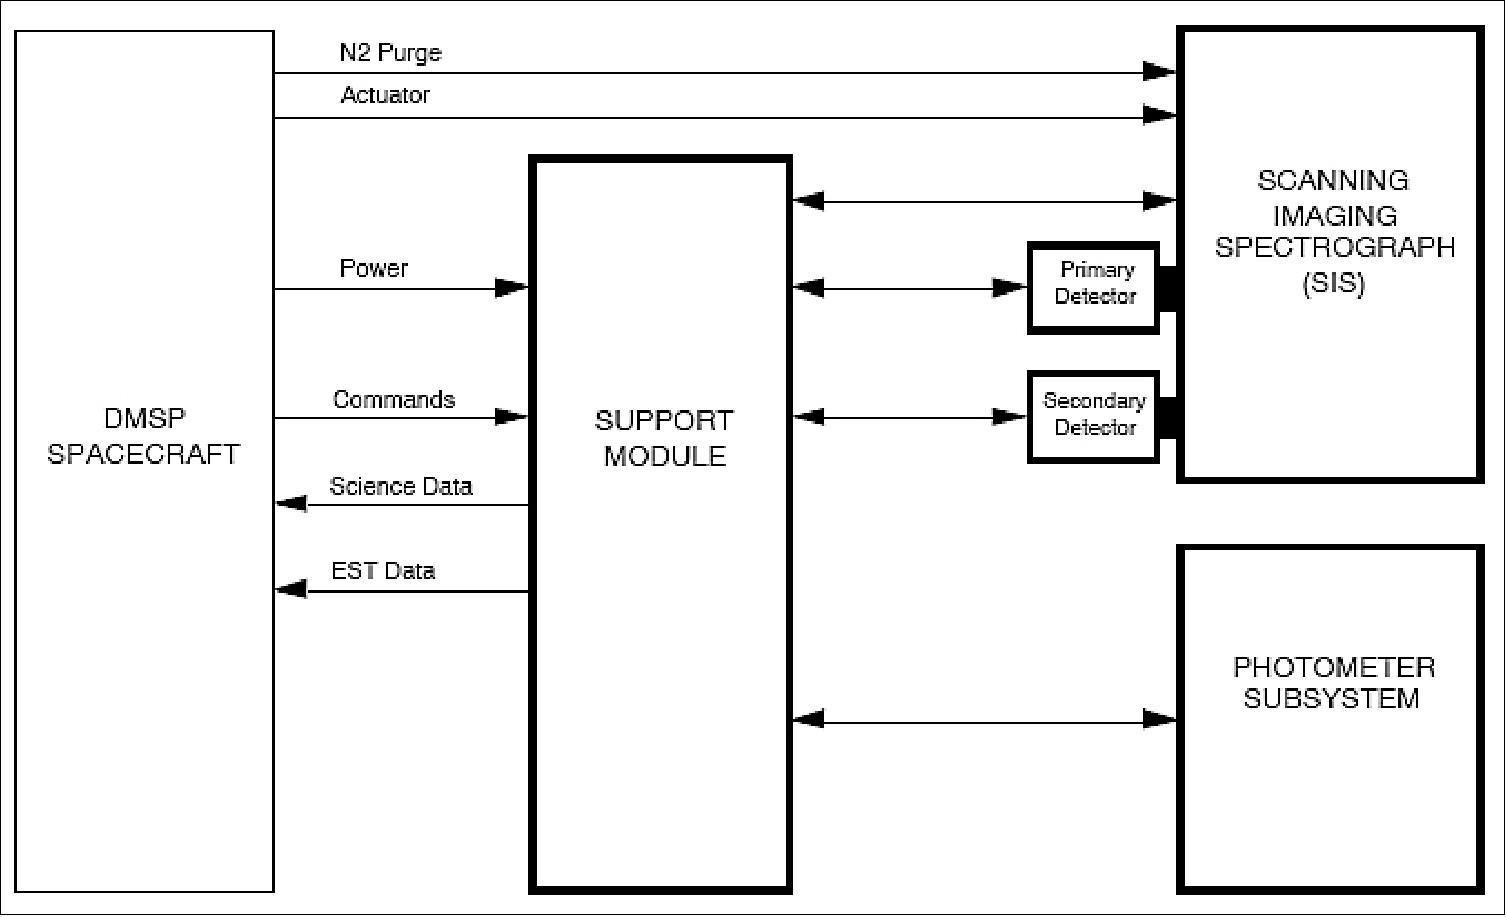 Figure 46: Block diagram of the SSUSI instrument (image credit: JHU/APL)